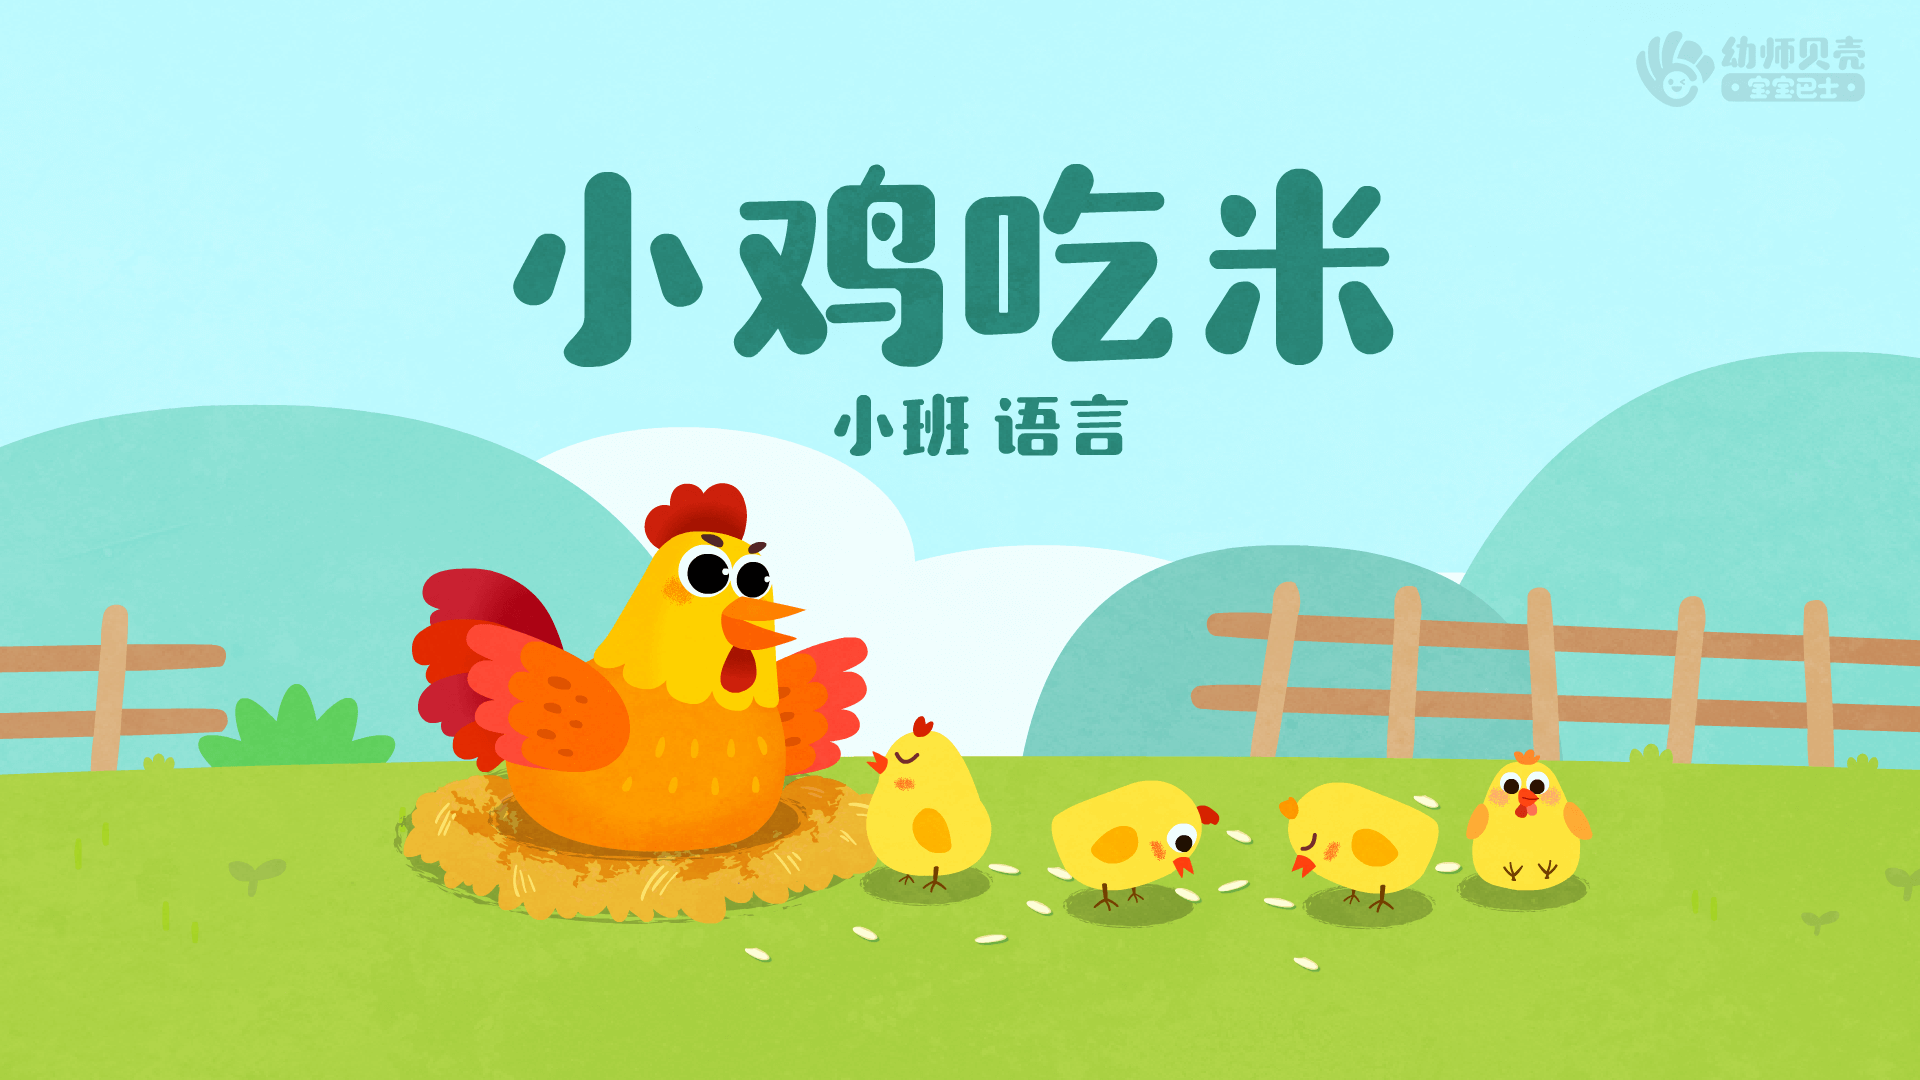 小鸡吃米简谱图片